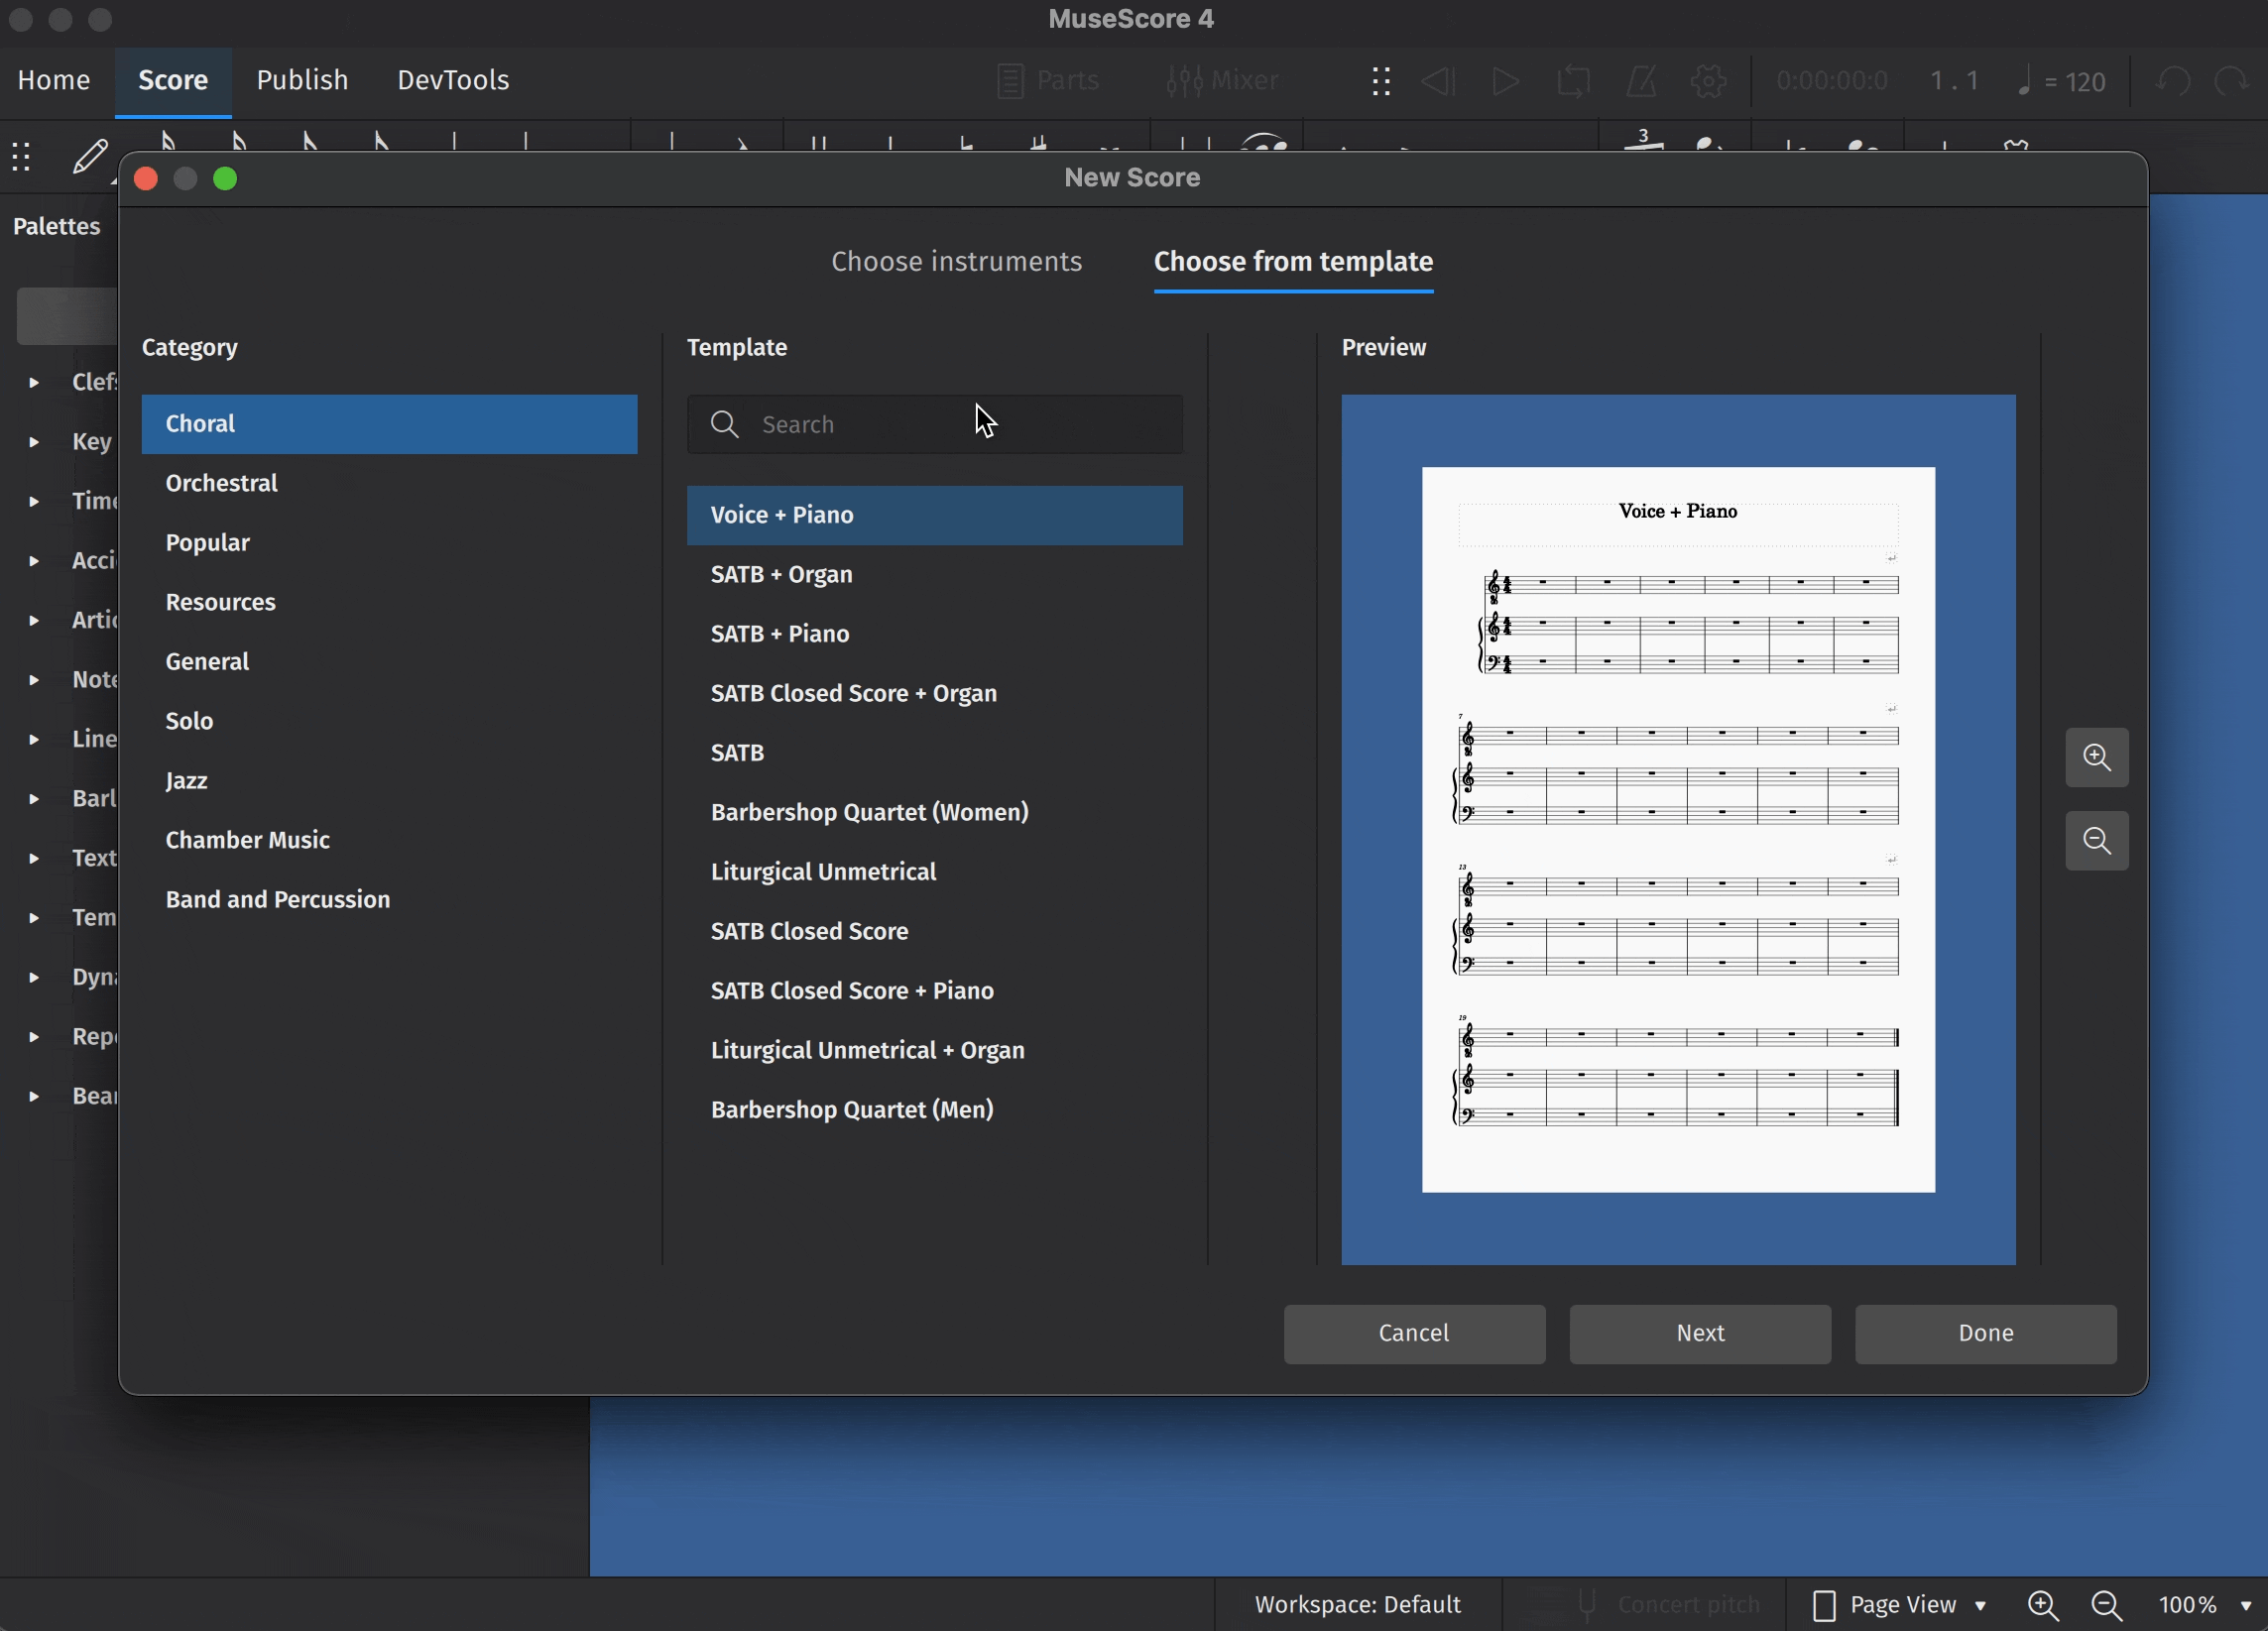 Adding instruments (animated image)